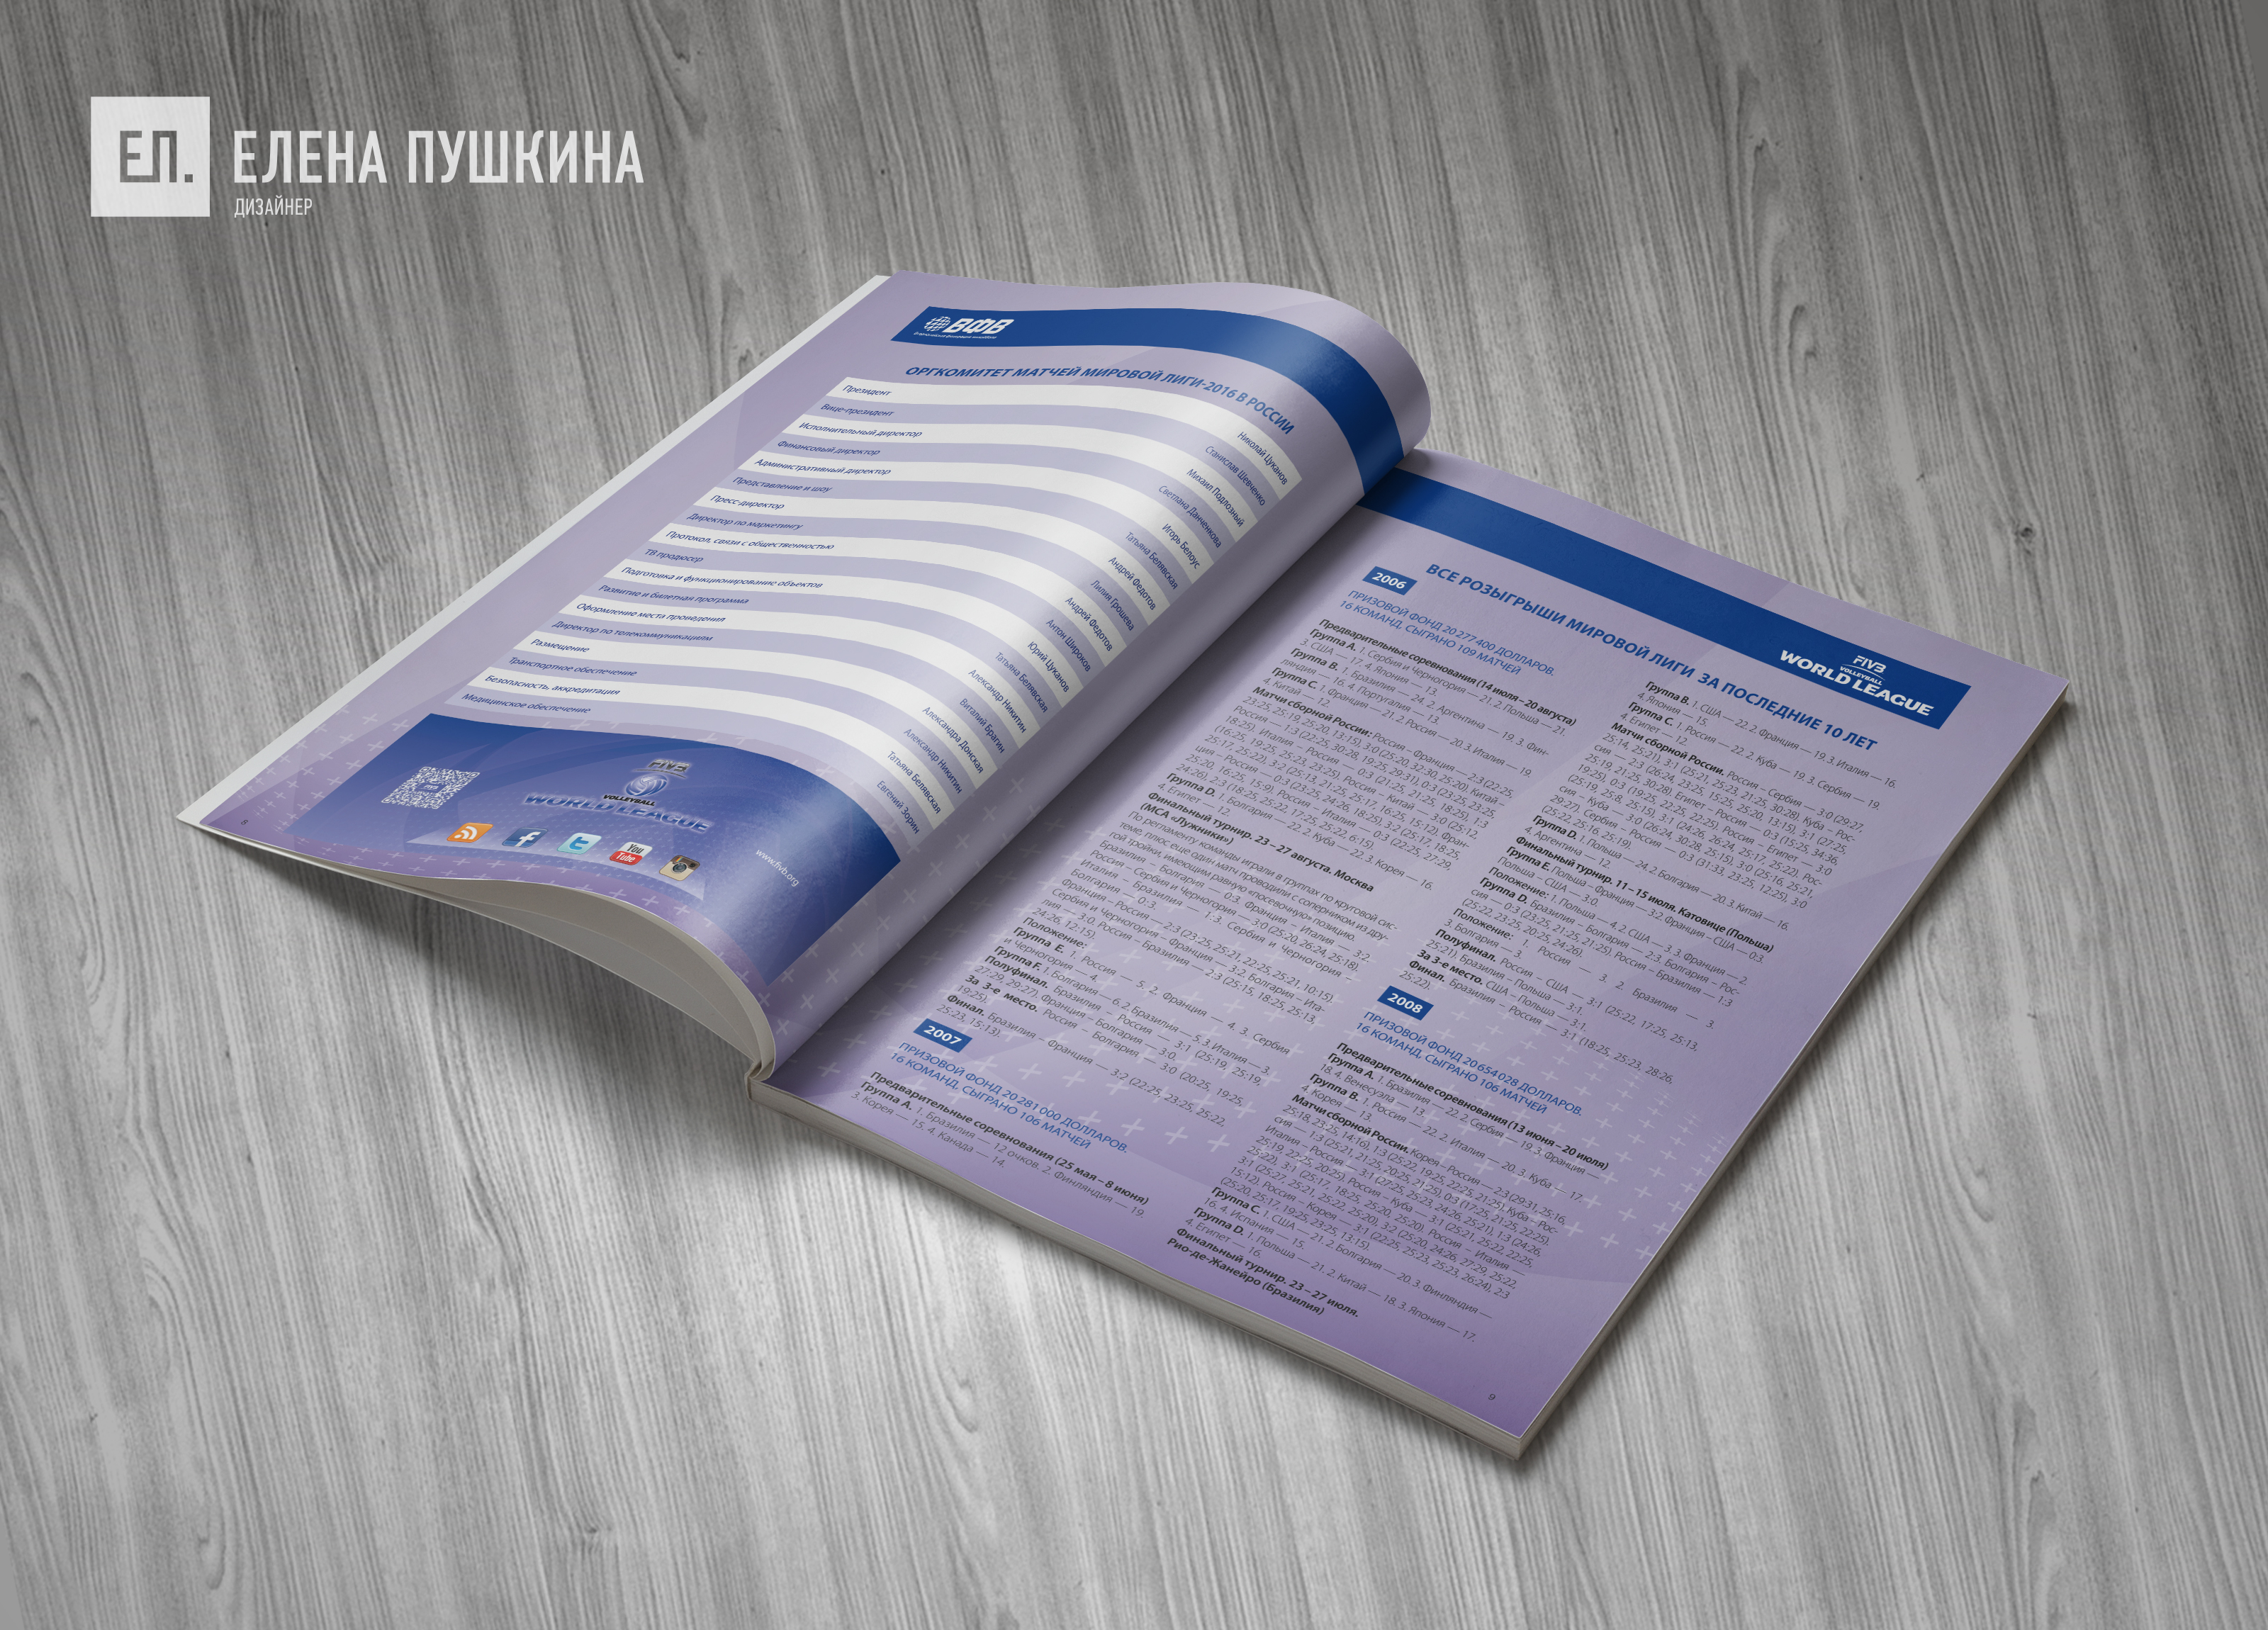 «Волейбол. Мировая лига ФИВБ 2016» — разработка дизайна с «нуля» и вёрстка брошюры Дизайн каталогов Портфолио